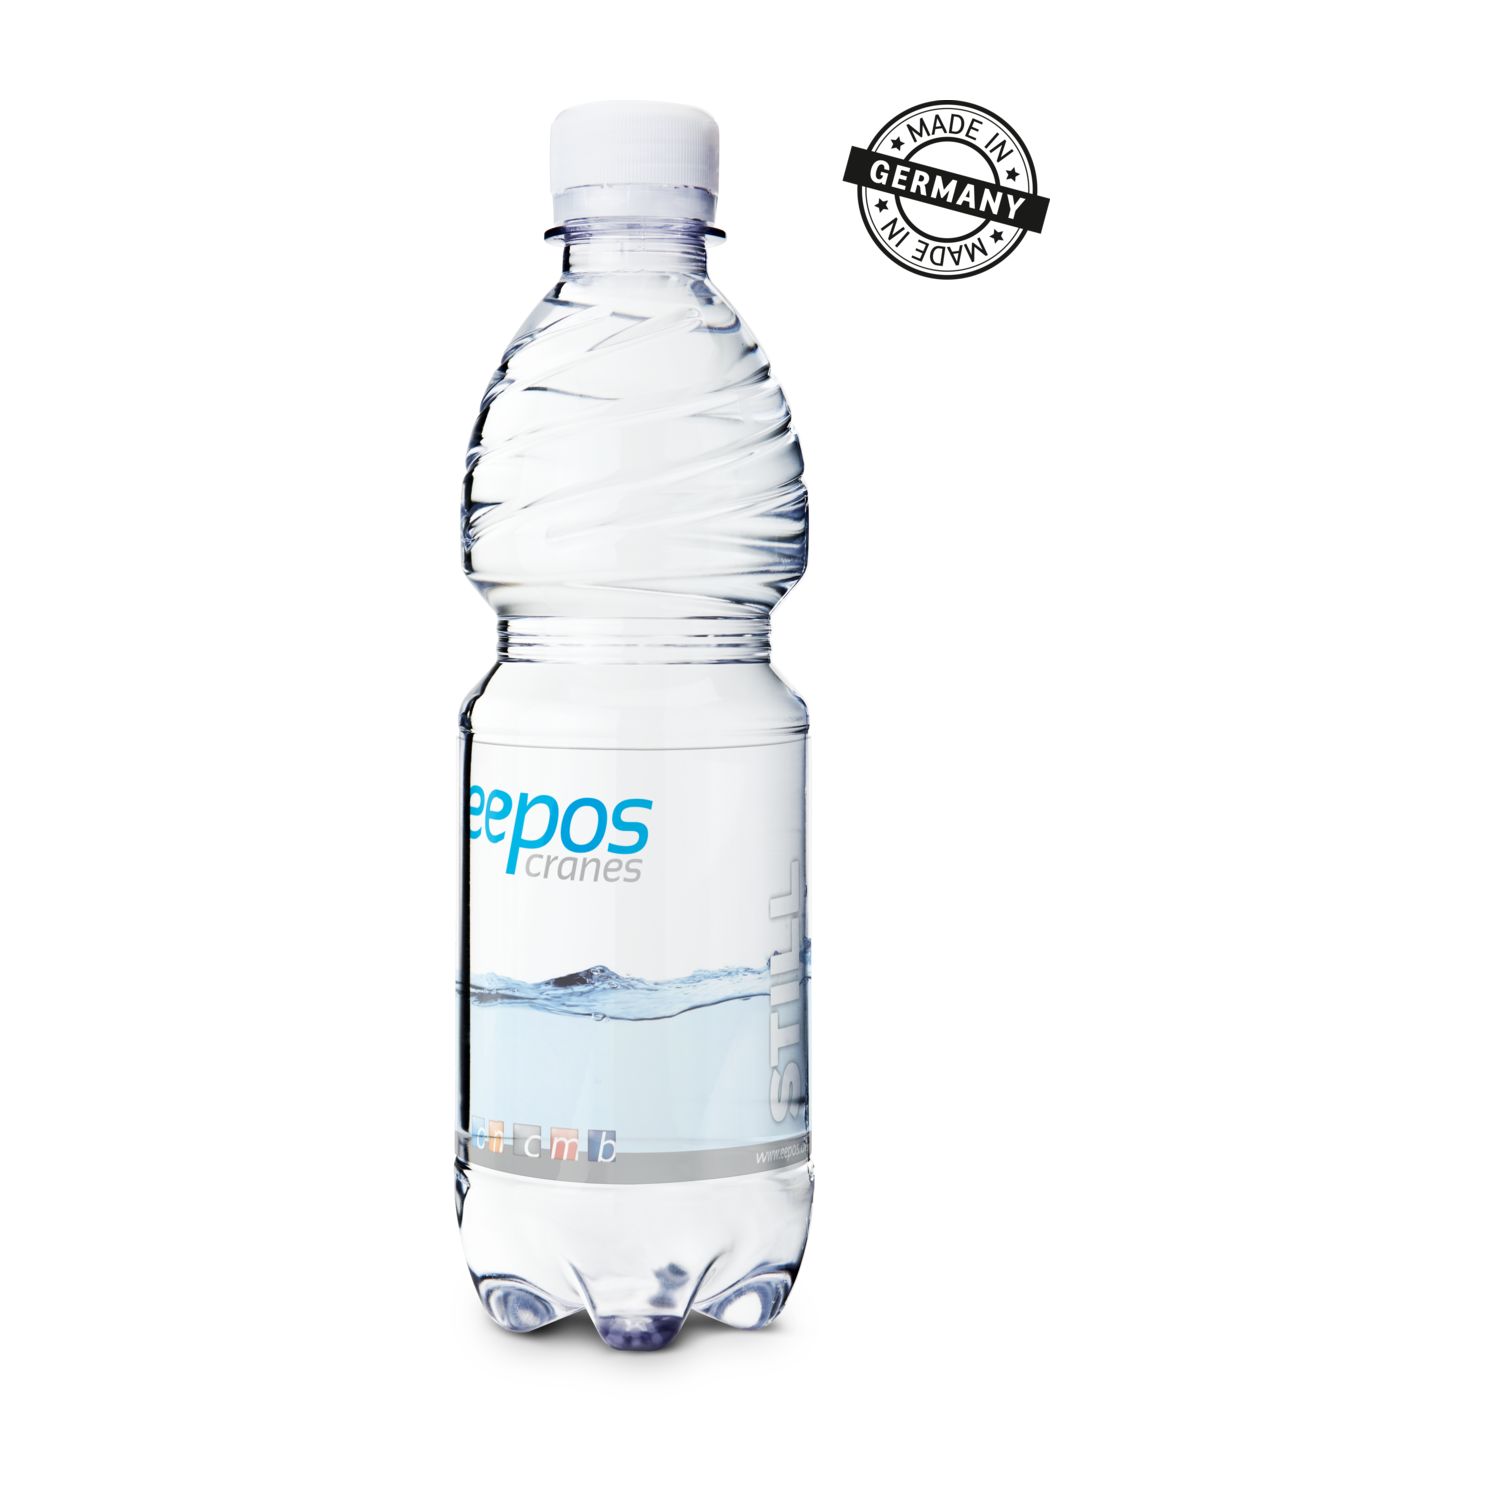 500 ml PromoWater - Mineralwasser mit Kohlensäure, Hergestellt in Deutschland - Eco Papier-Etikett